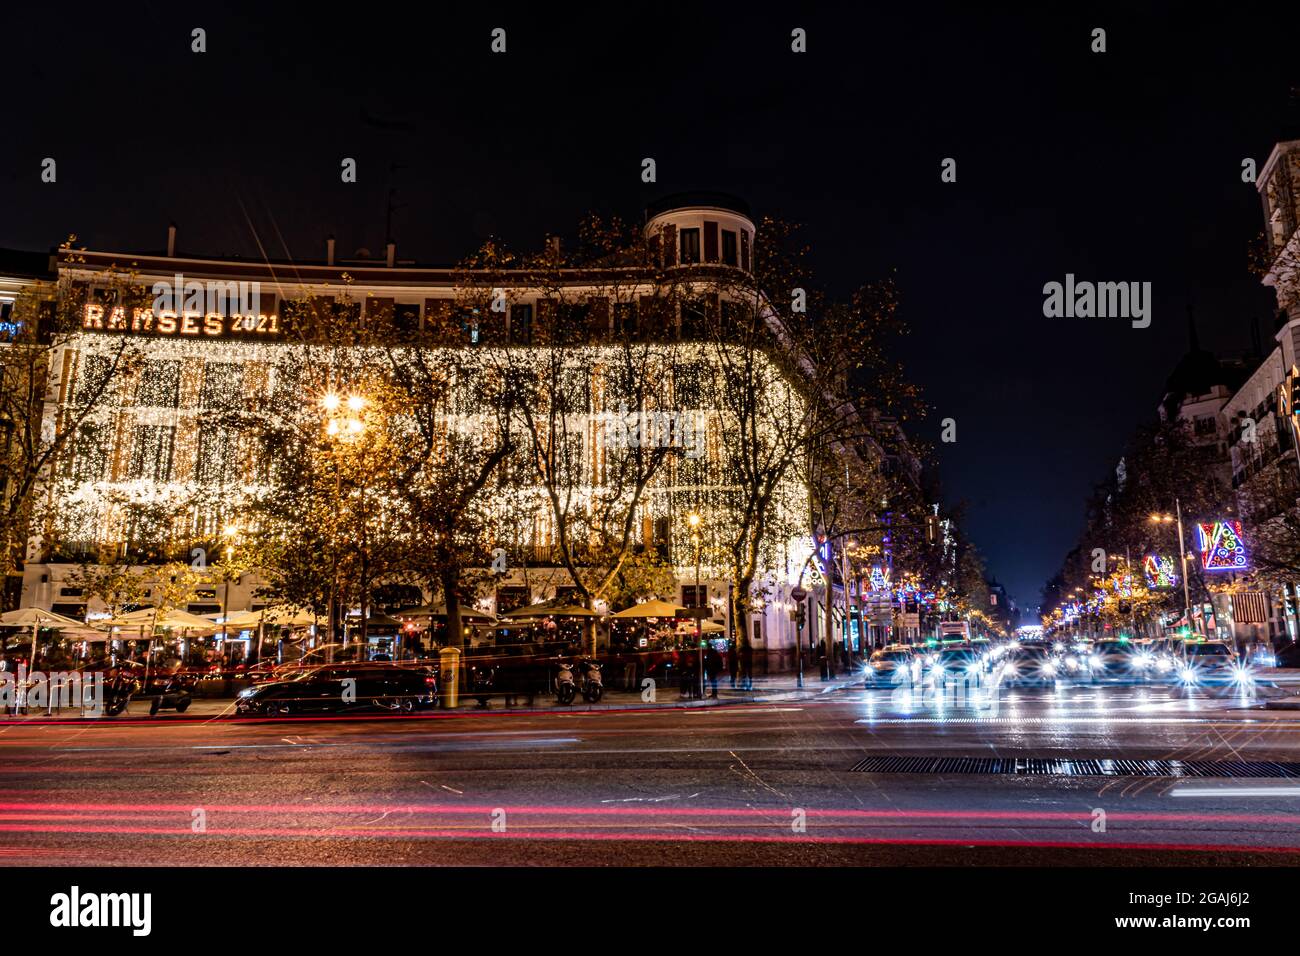 MADRID, ESPAÑA - 02 de enero de 2021: El hotel Ramses 2021 en la plaza  Puerta de Alcalá, iluminado con decoraciones navideñas Fotografía de stock  - Alamy